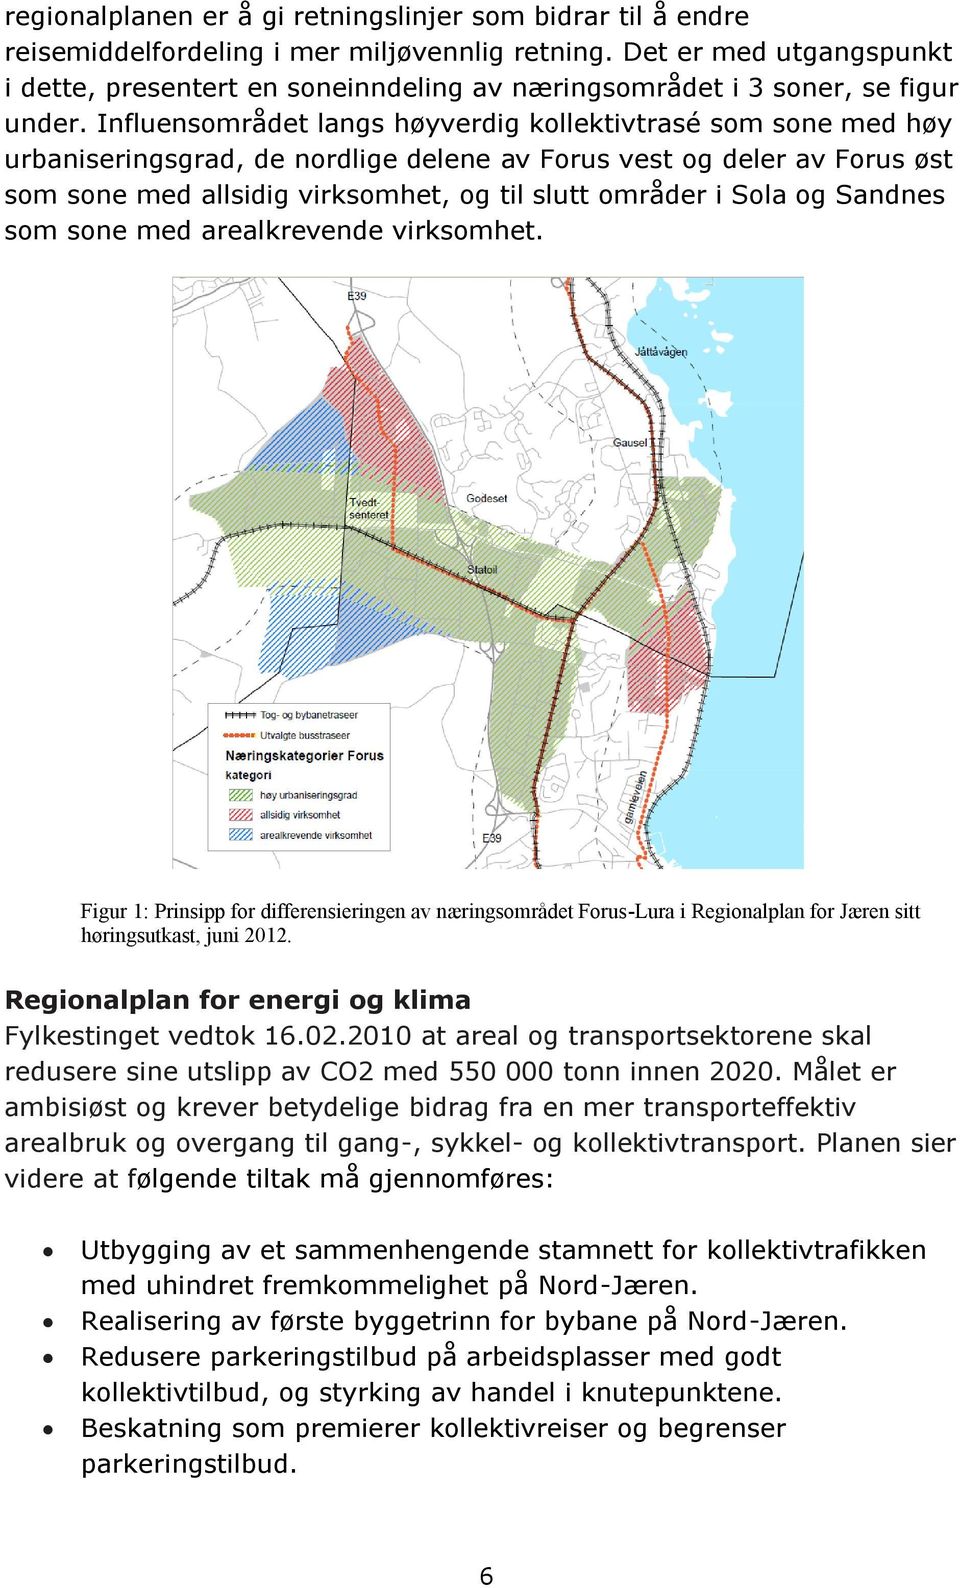 Influensområdet langs høyverdig kollektivtrasé som sone med høy urbaniseringsgrad, de nordlige delene av Forus vest og deler av Forus øst som sone med allsidig virksomhet, og til slutt områder i Sola